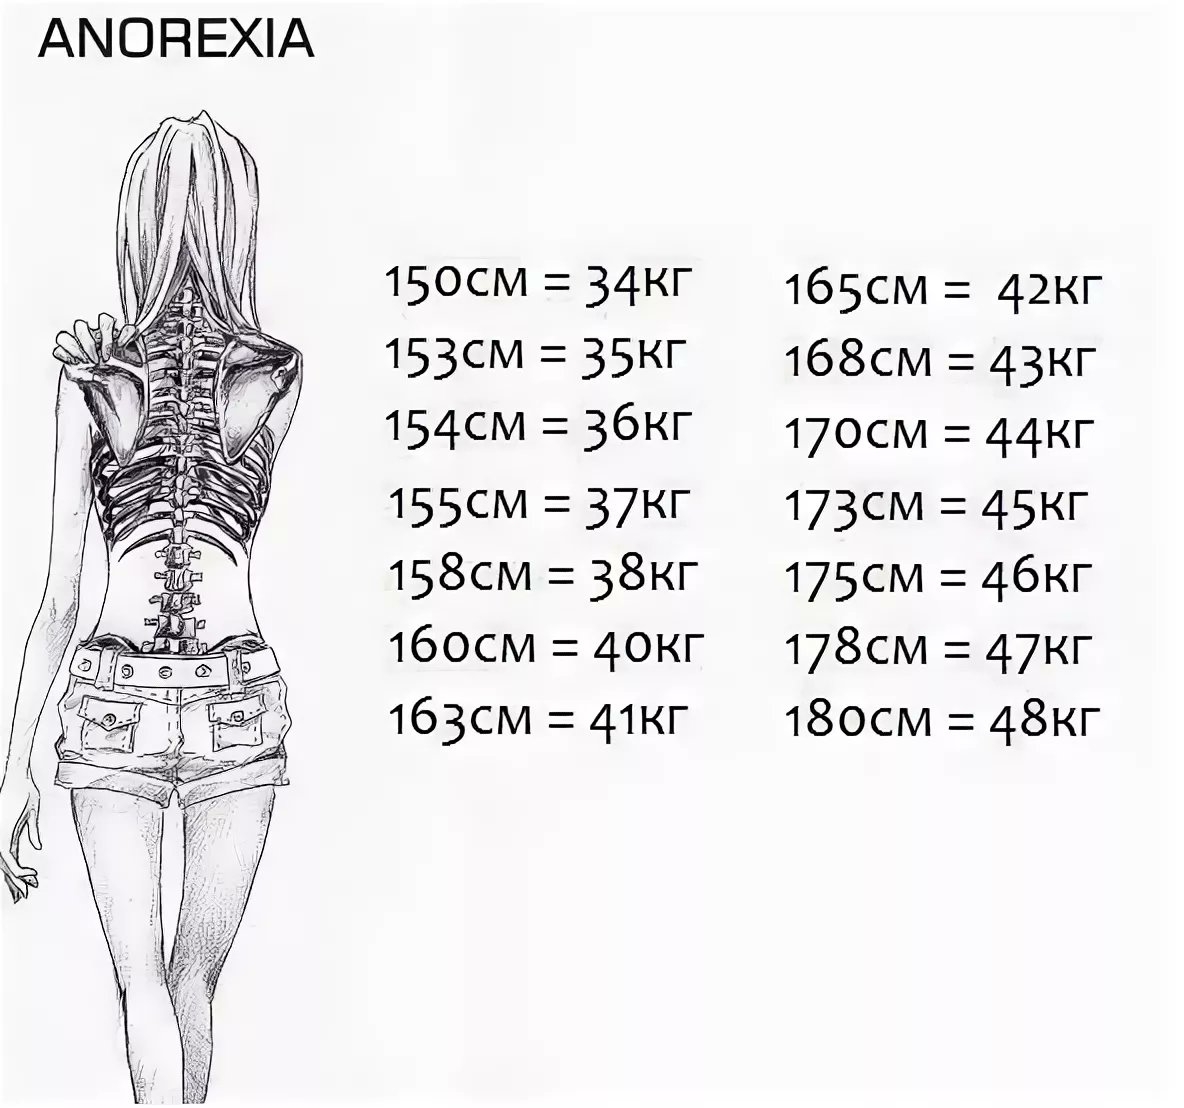 155 идеальный рост. Анорексия вес и рост. С какого веса начинается анорексия при росте 160. Таблица анорексии рост вес.